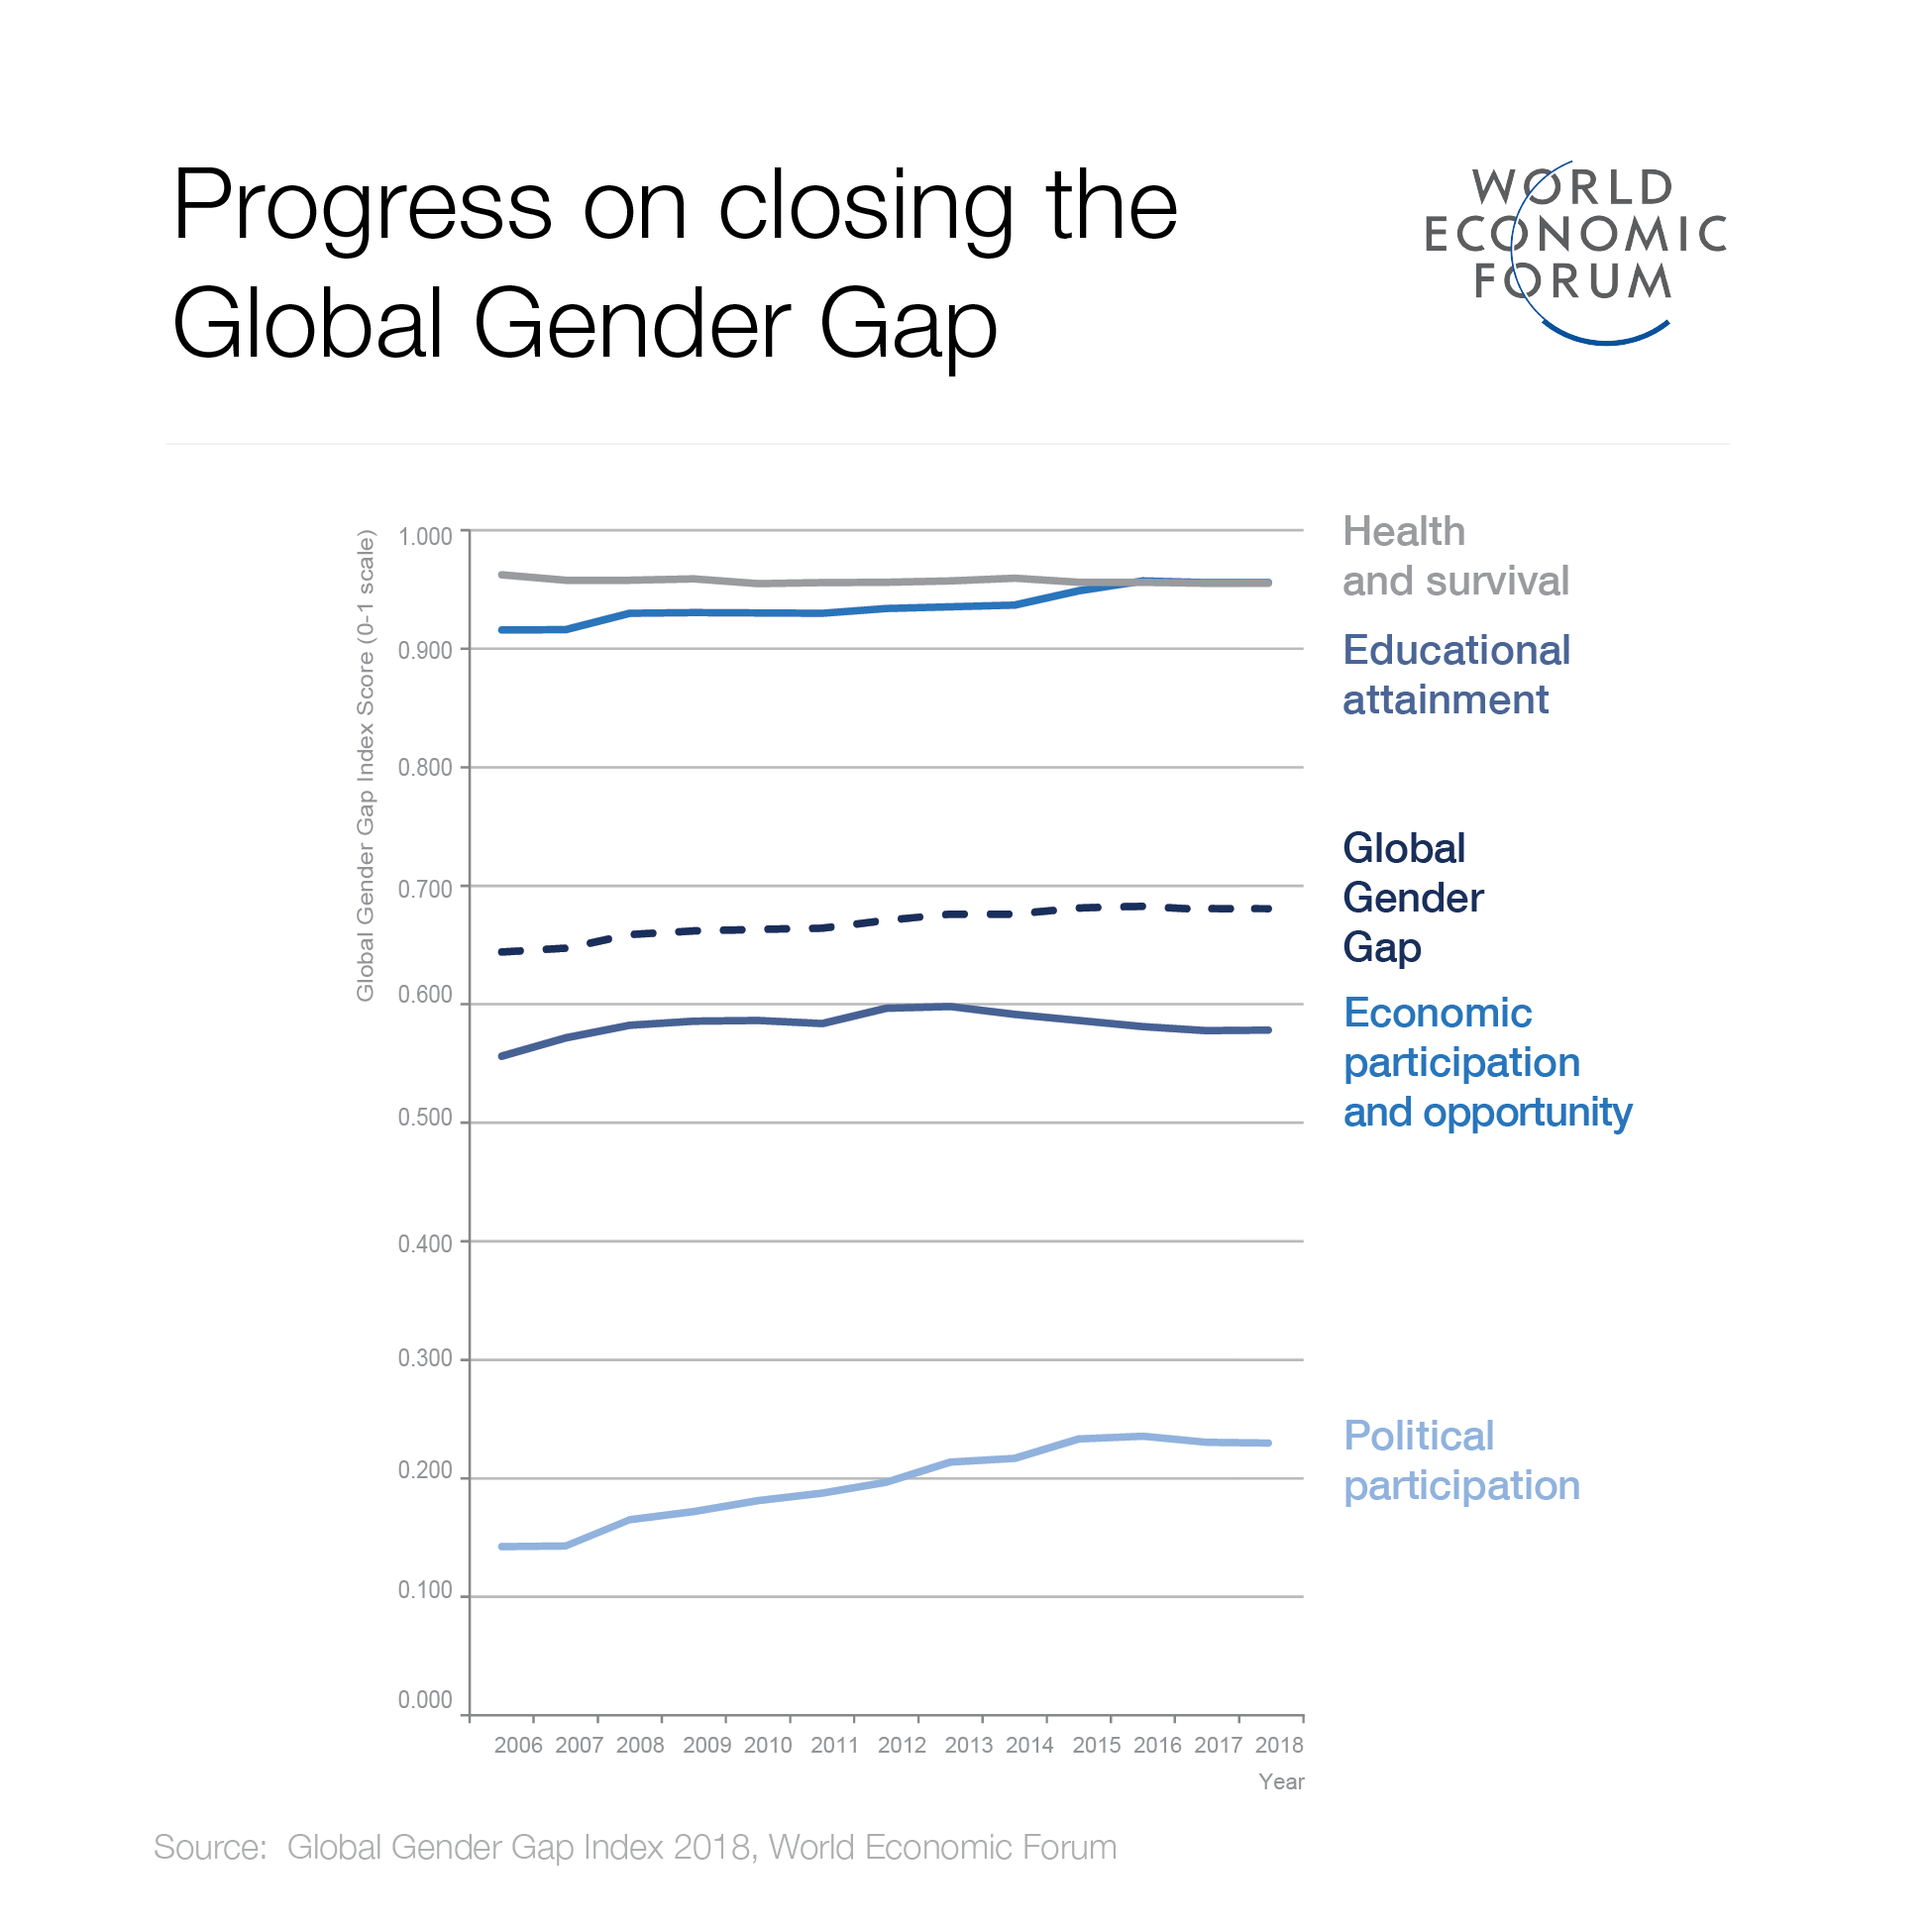 WEF statistic on gender gap